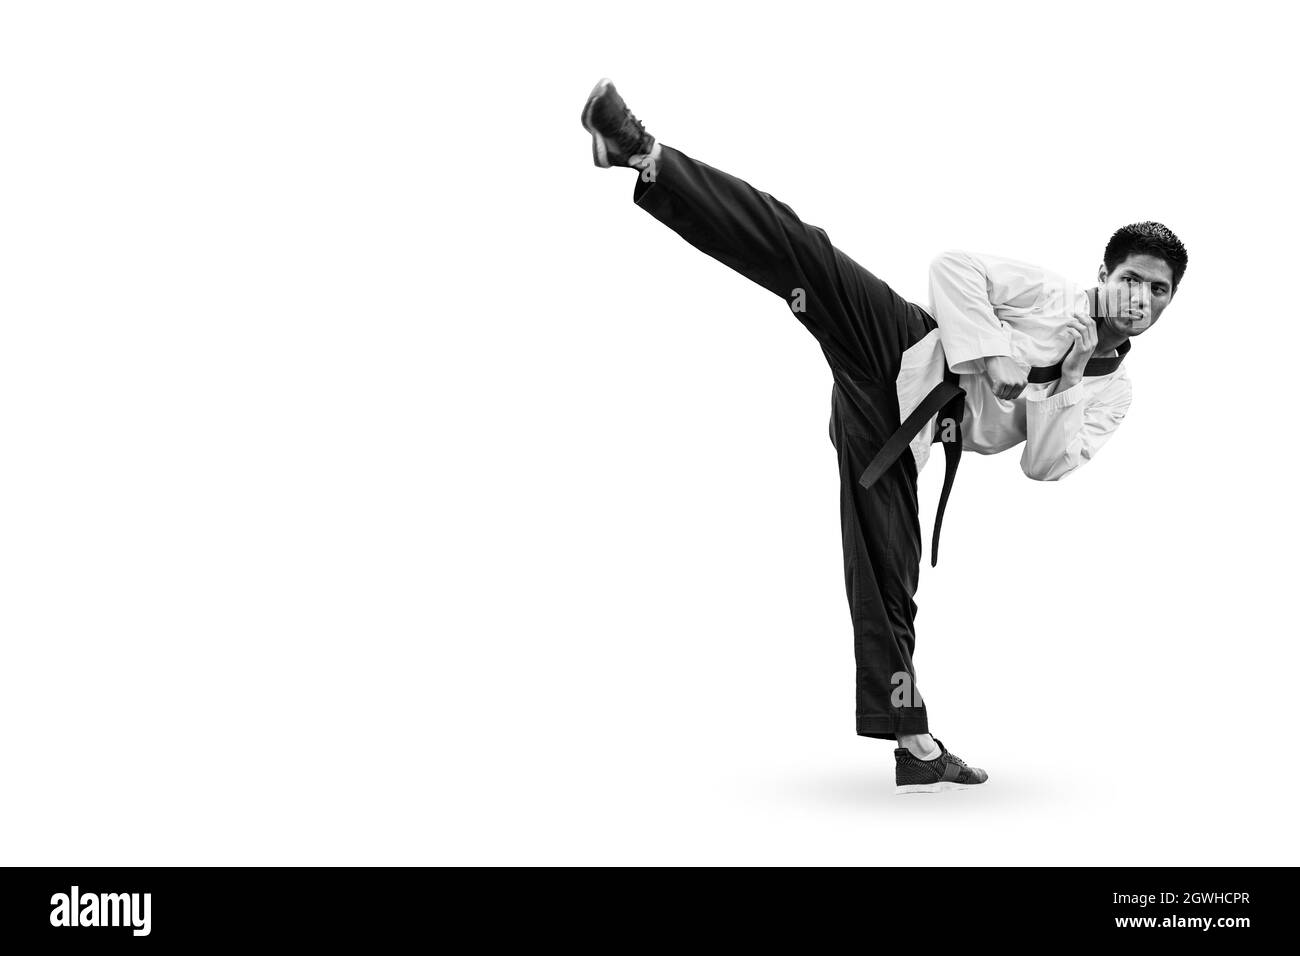 Homme debout High kick, Taekwondo asiatique Martial arts de la légitime défense avec l'espace pour le texte Banque D'Images